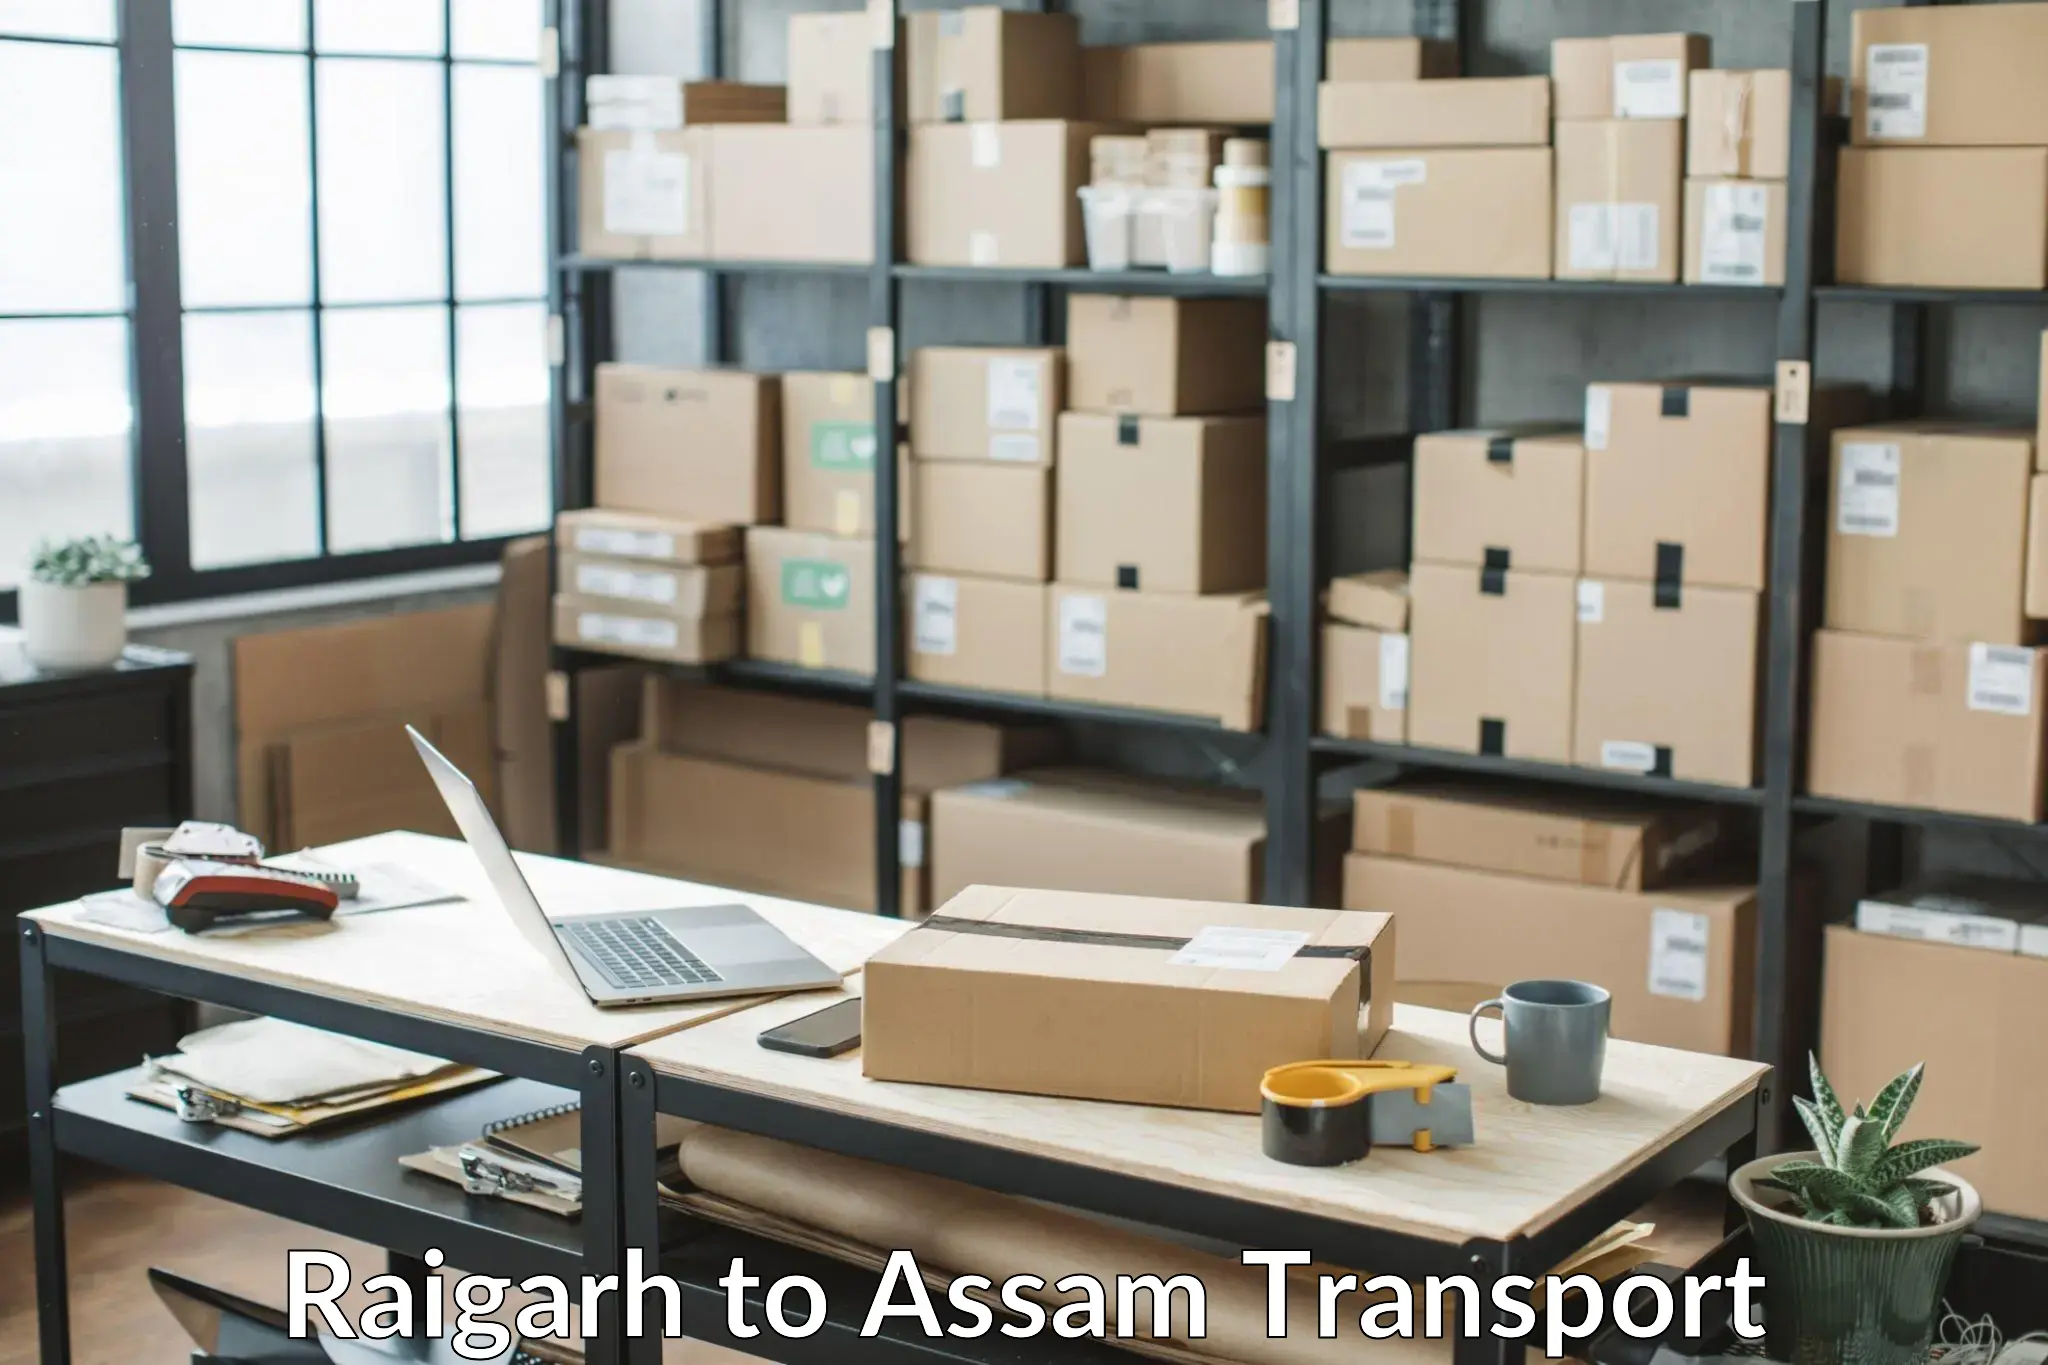 Online transport service Raigarh to Assam